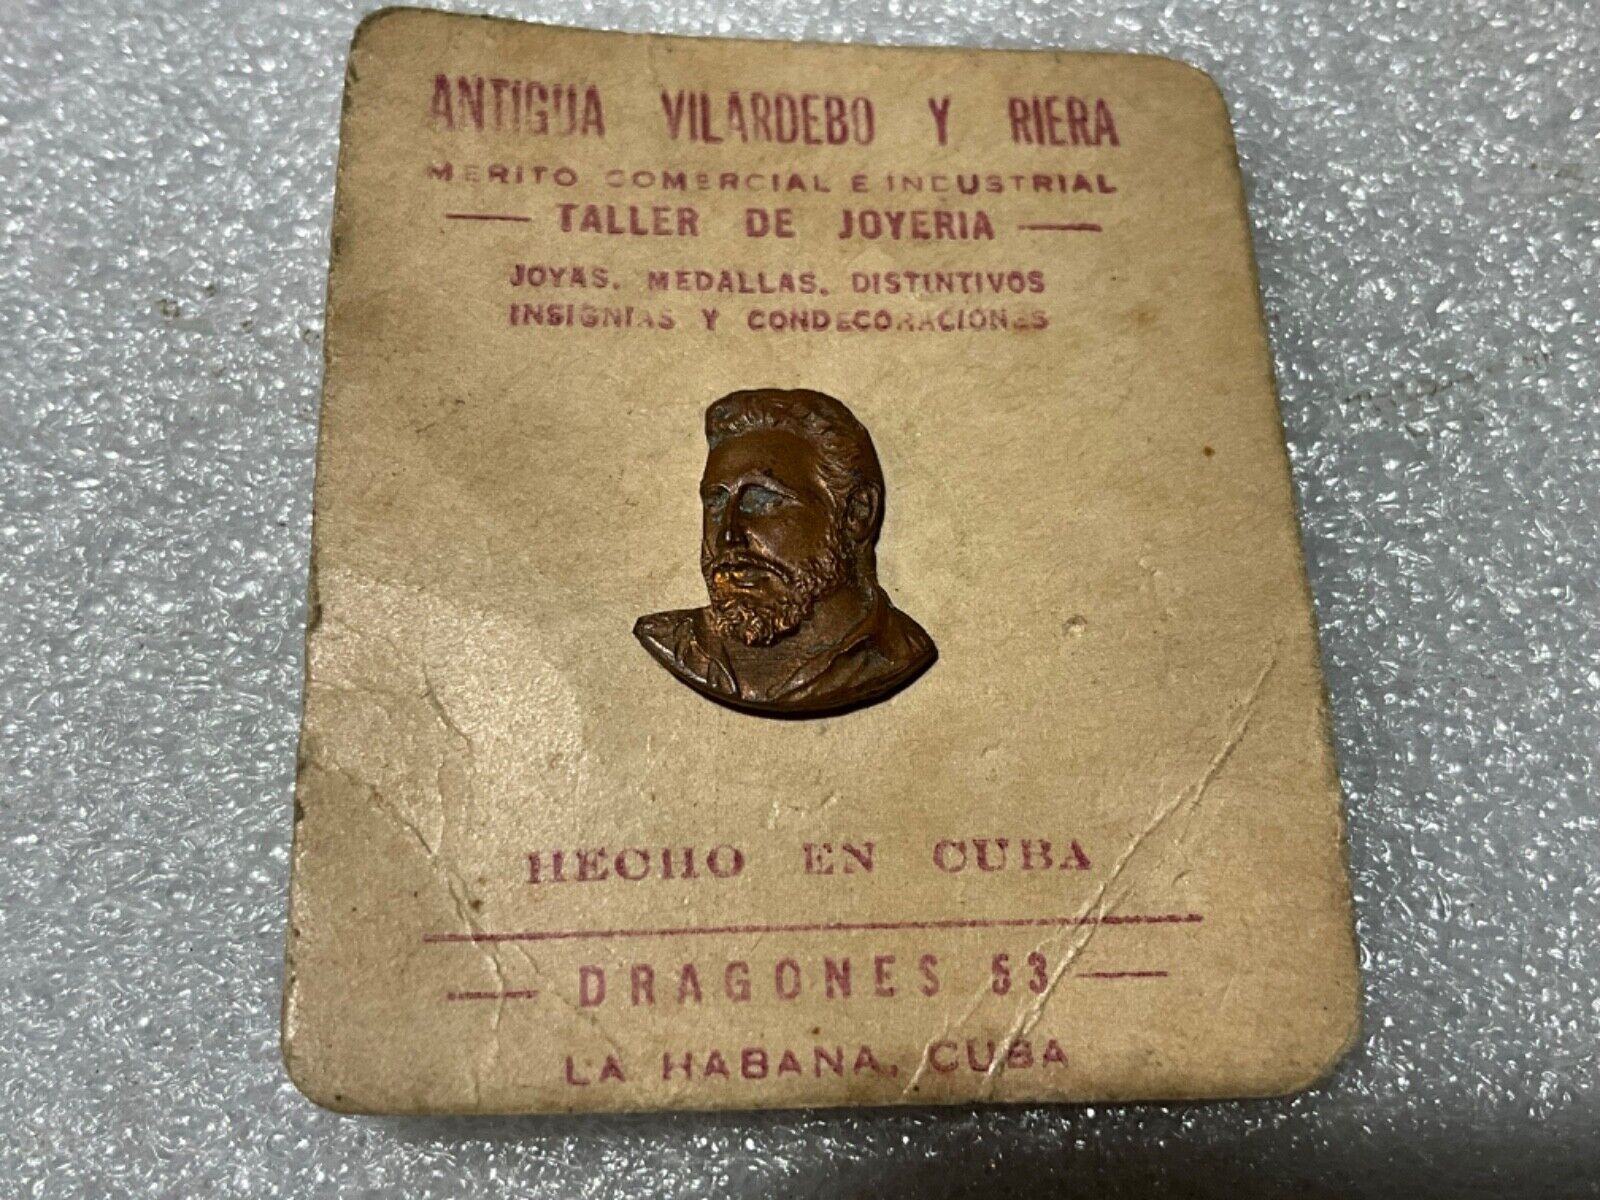 60s RARE FIDEL CASTRO PIN ON CARDBOARD ANTIGUA VILLARDEBO RIERA SEIZED BY CASTRO